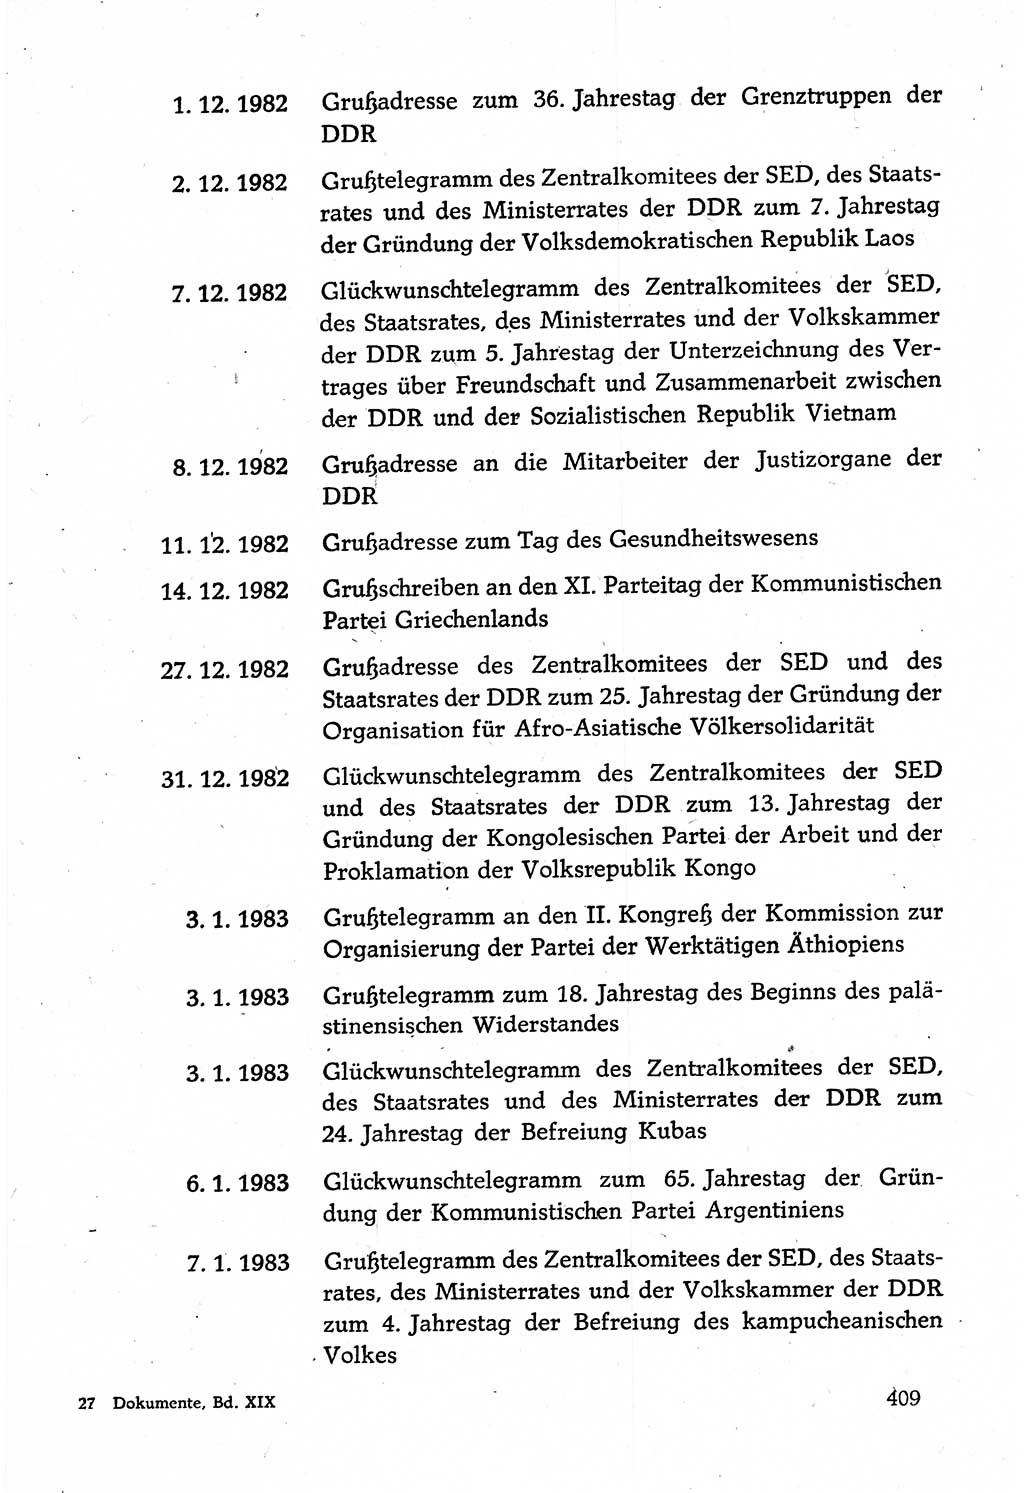 Dokumente der Sozialistischen Einheitspartei Deutschlands (SED) [Deutsche Demokratische Republik (DDR)] 1982-1983, Seite 409 (Dok. SED DDR 1982-1983, S. 409)